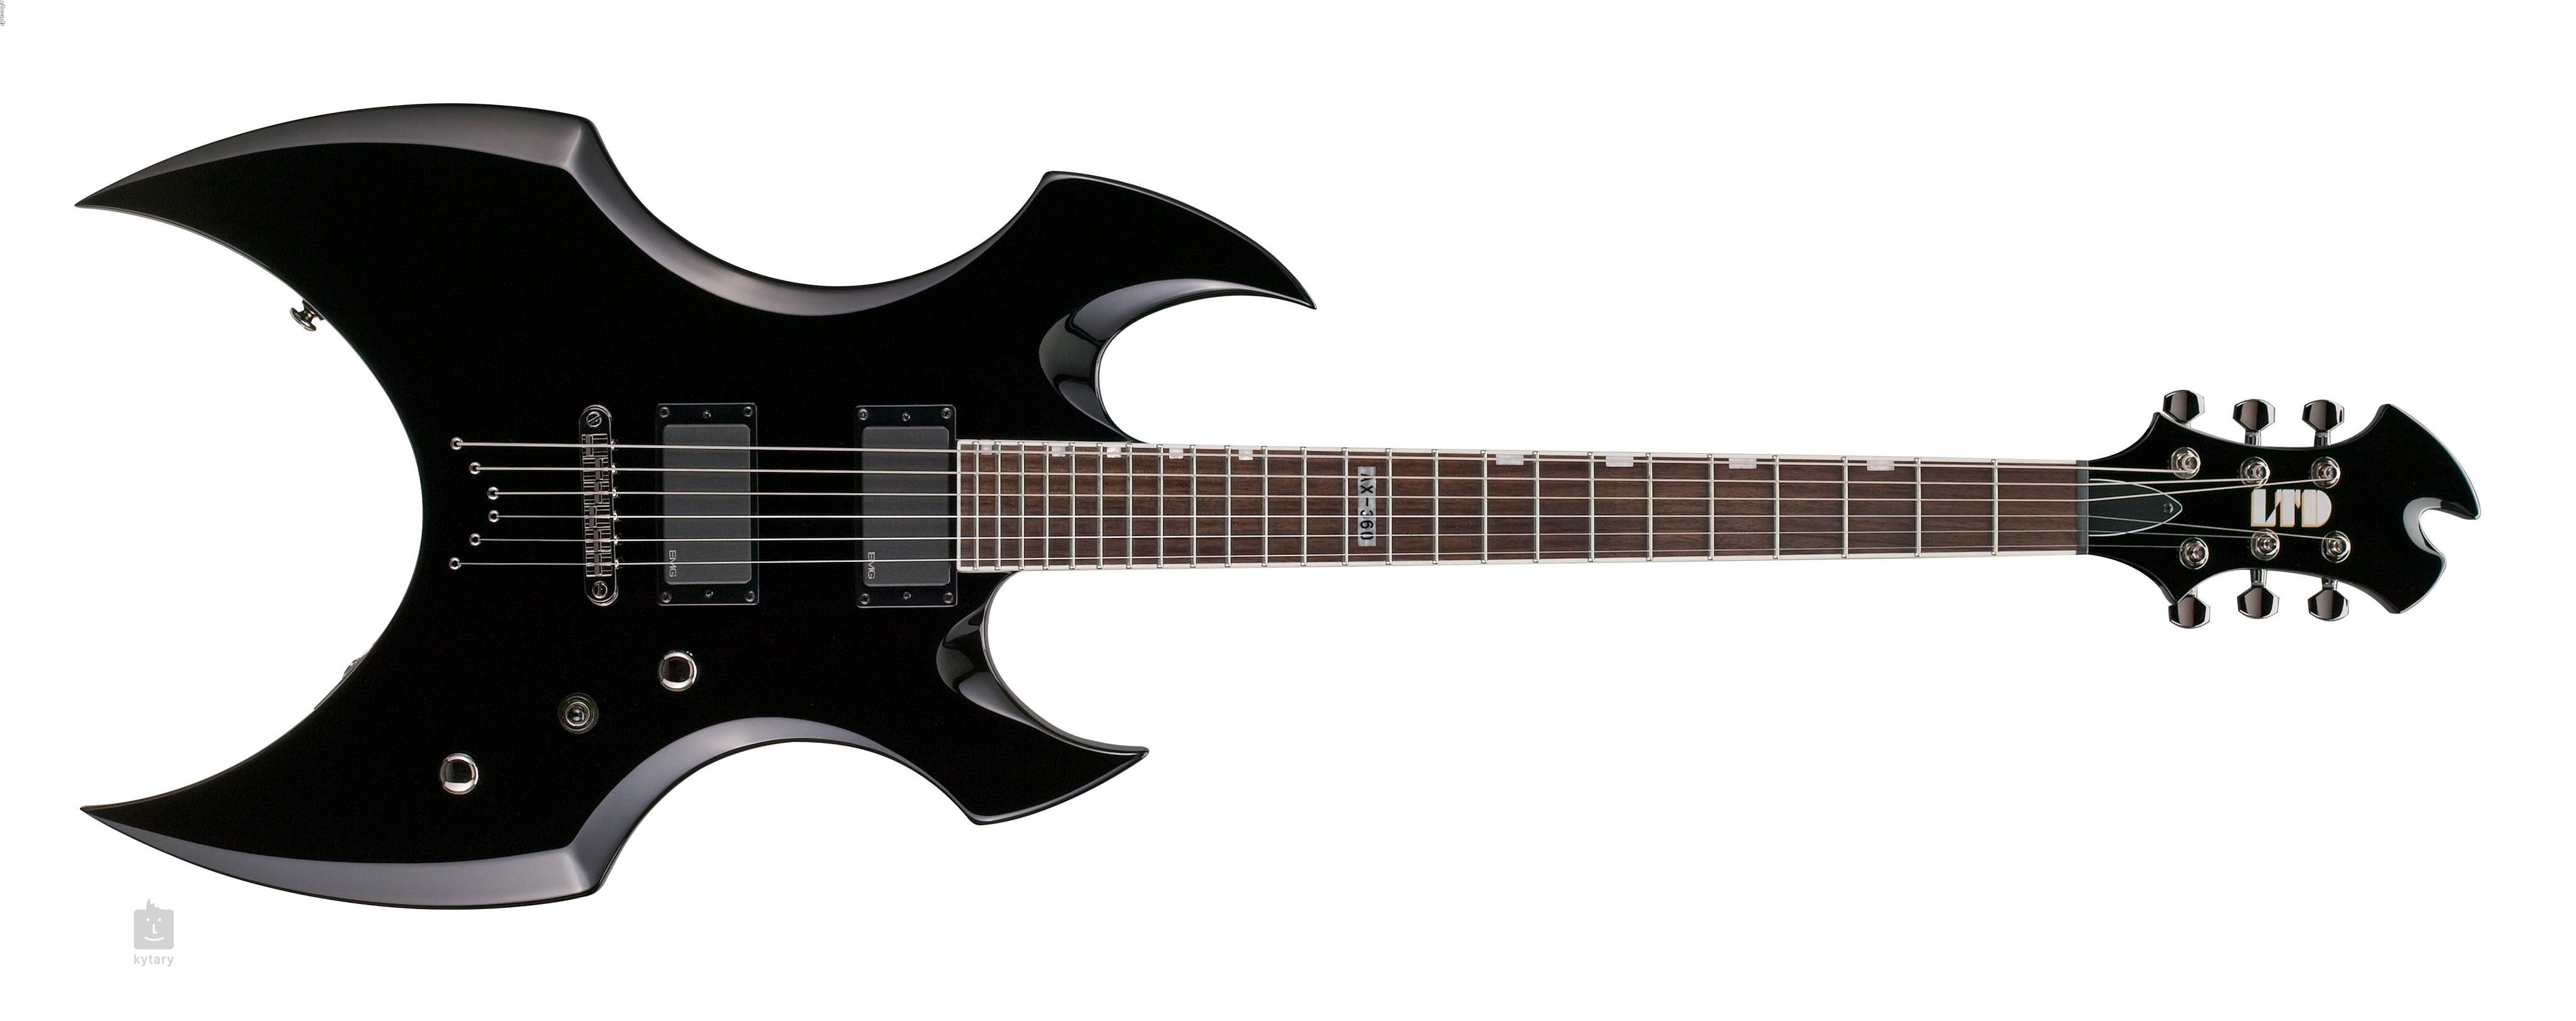 Ltd limited. Бас-гитара Ltd AX-54. ESP Ltd AX-400. Электрогитара Ltd v-50. ESP Ltd f-10 BLK.